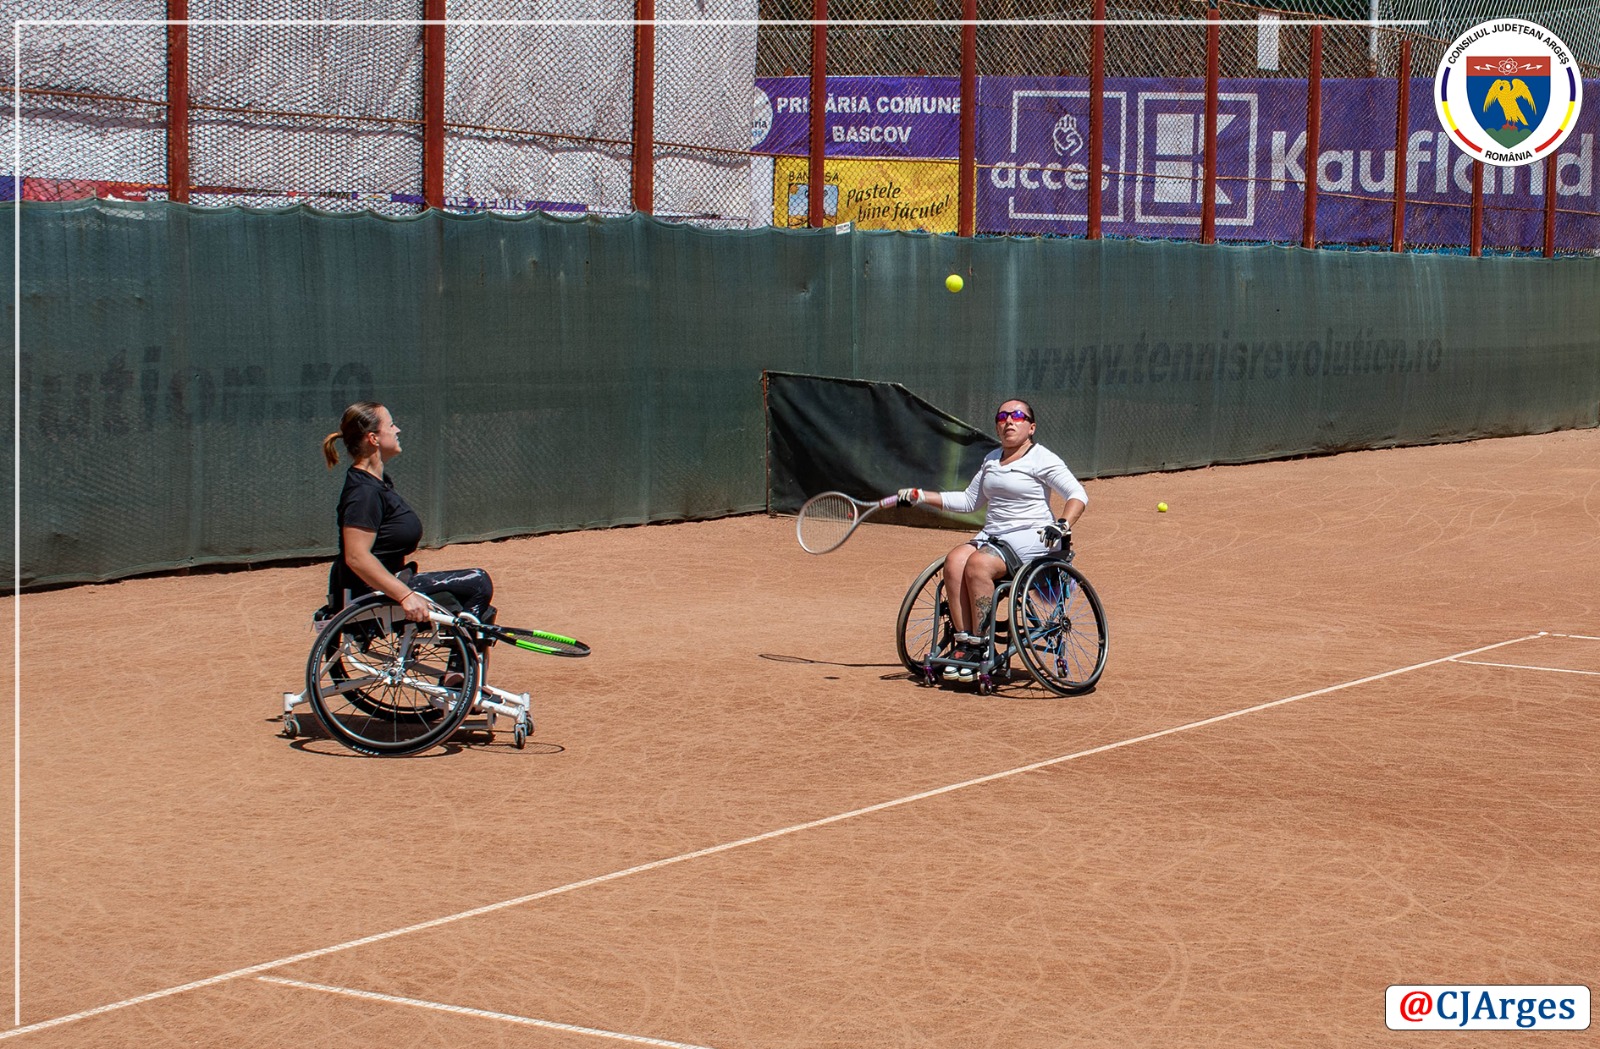 CJ ARGES - Turneul international de tenis destinat persoanelor cu dizabilitati (5).jpeg